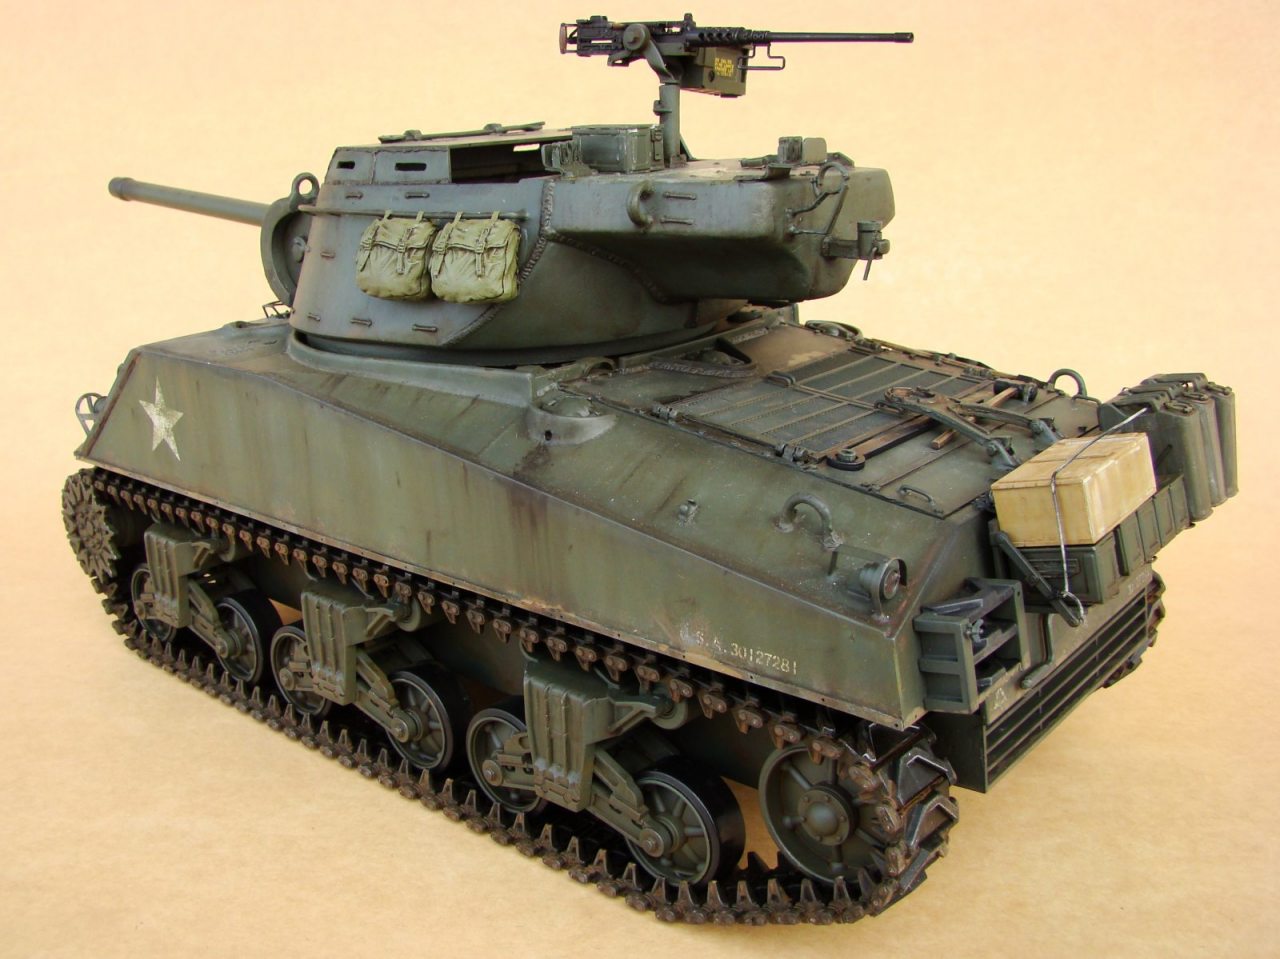 M4 Sherman Tamiya 1/16 scale